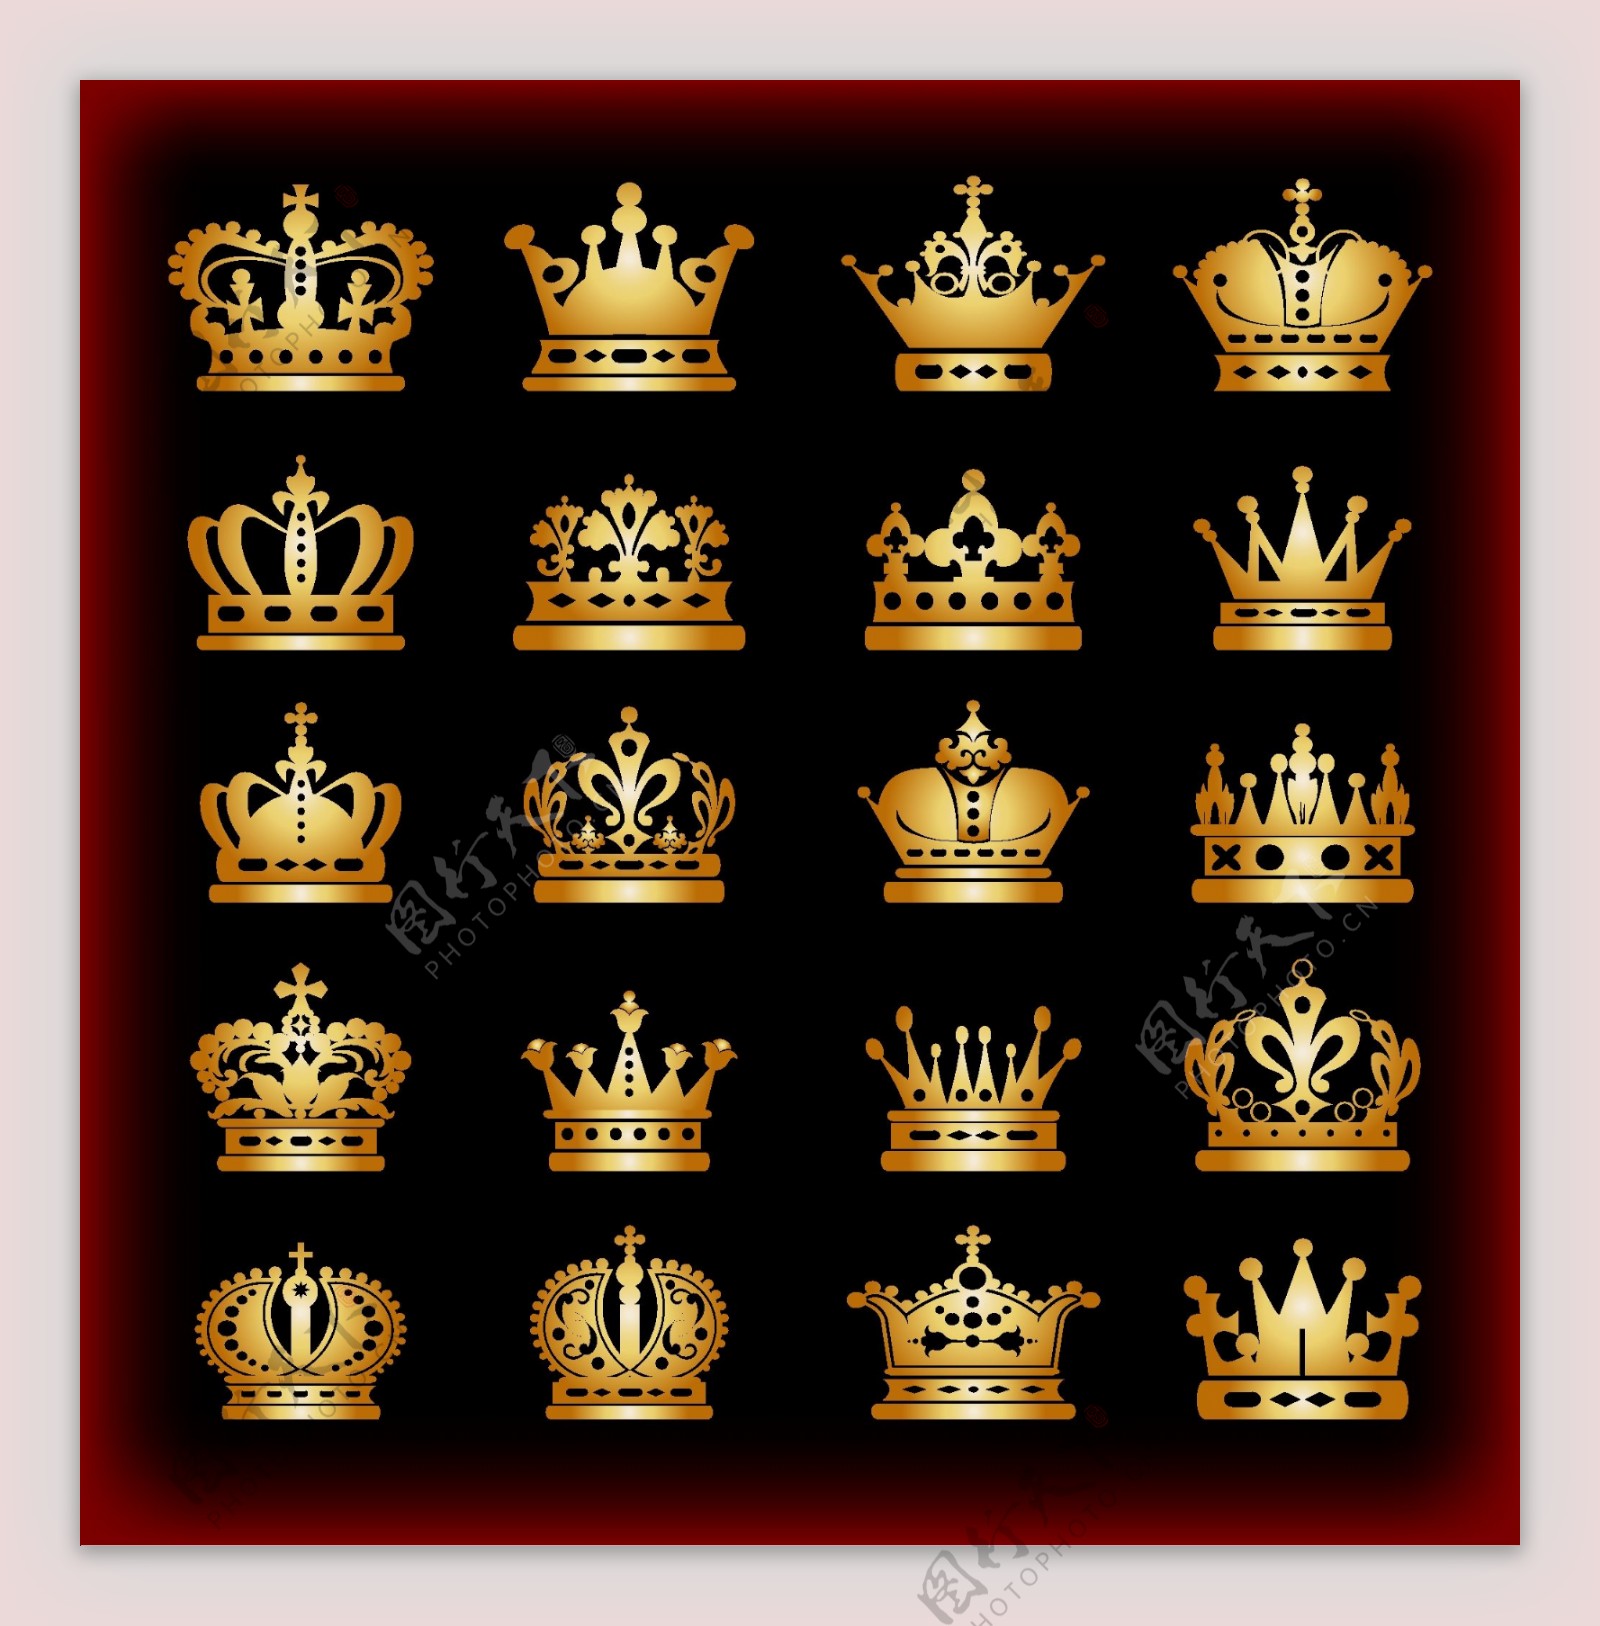 欧美风格古代皇冠分界线网页设计标签